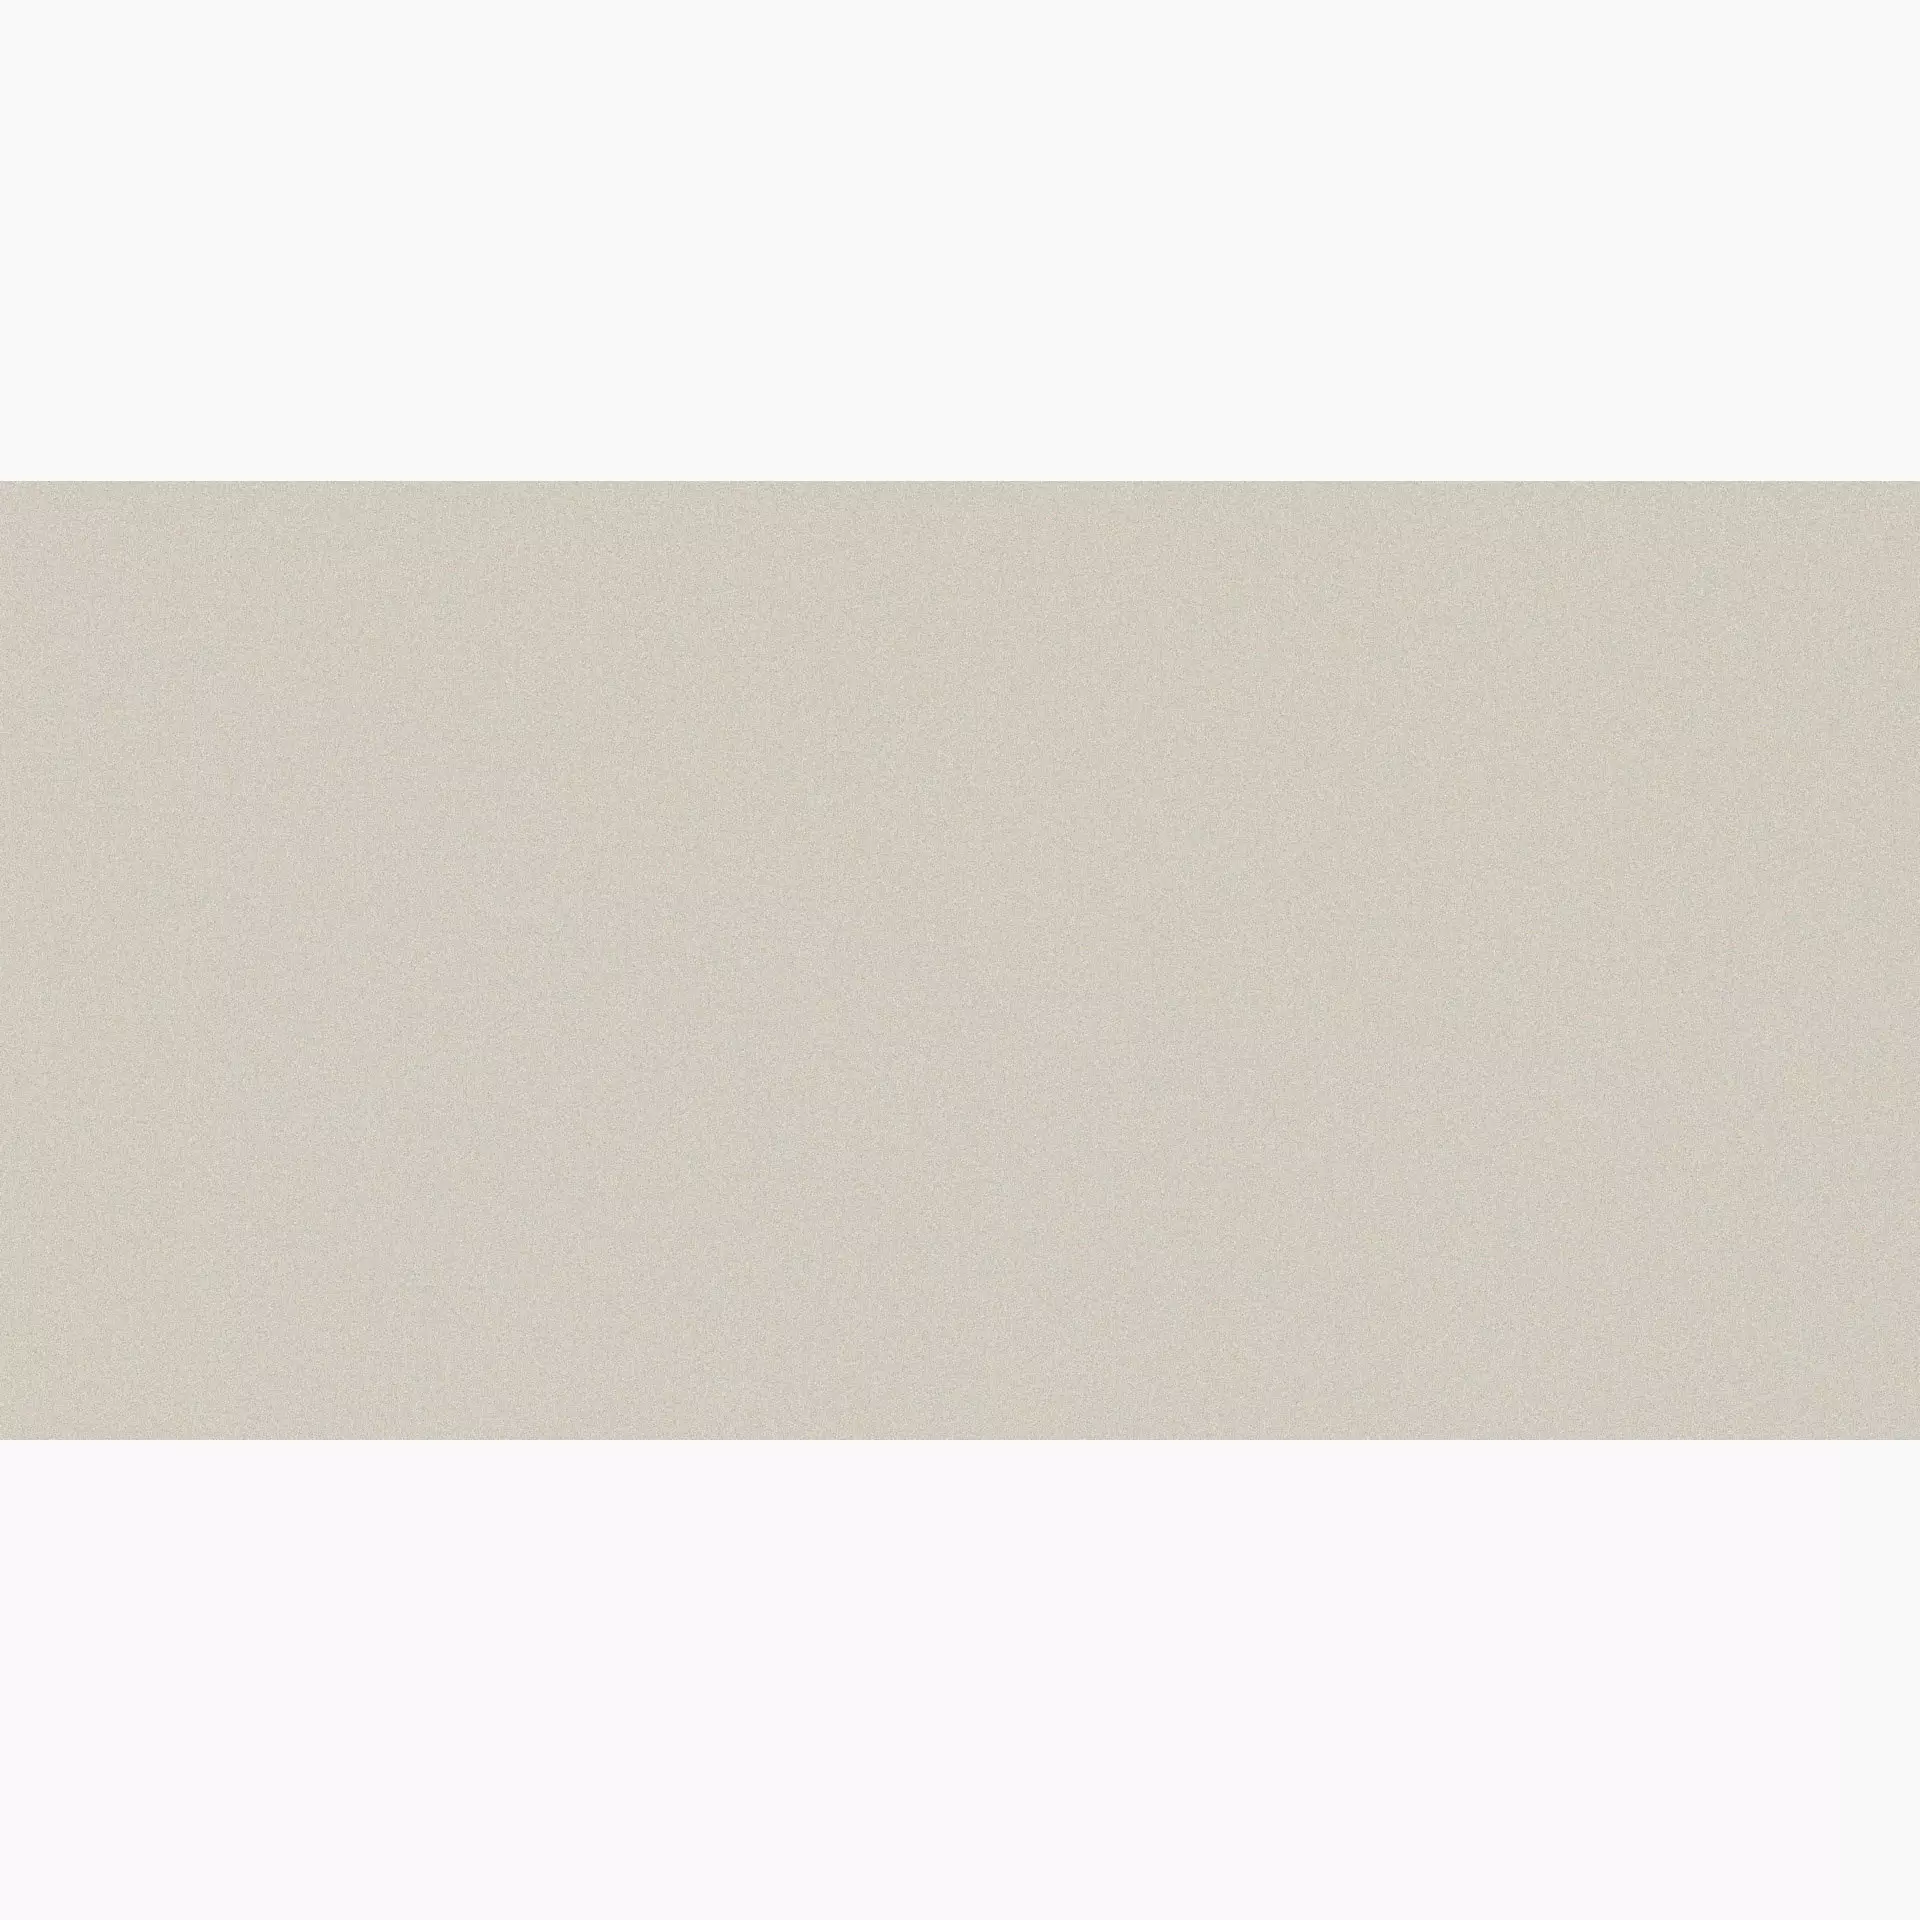 Casalgrande Architecture Warm Grey Naturale – Matt 4040047 45x90cm rectified 10mm